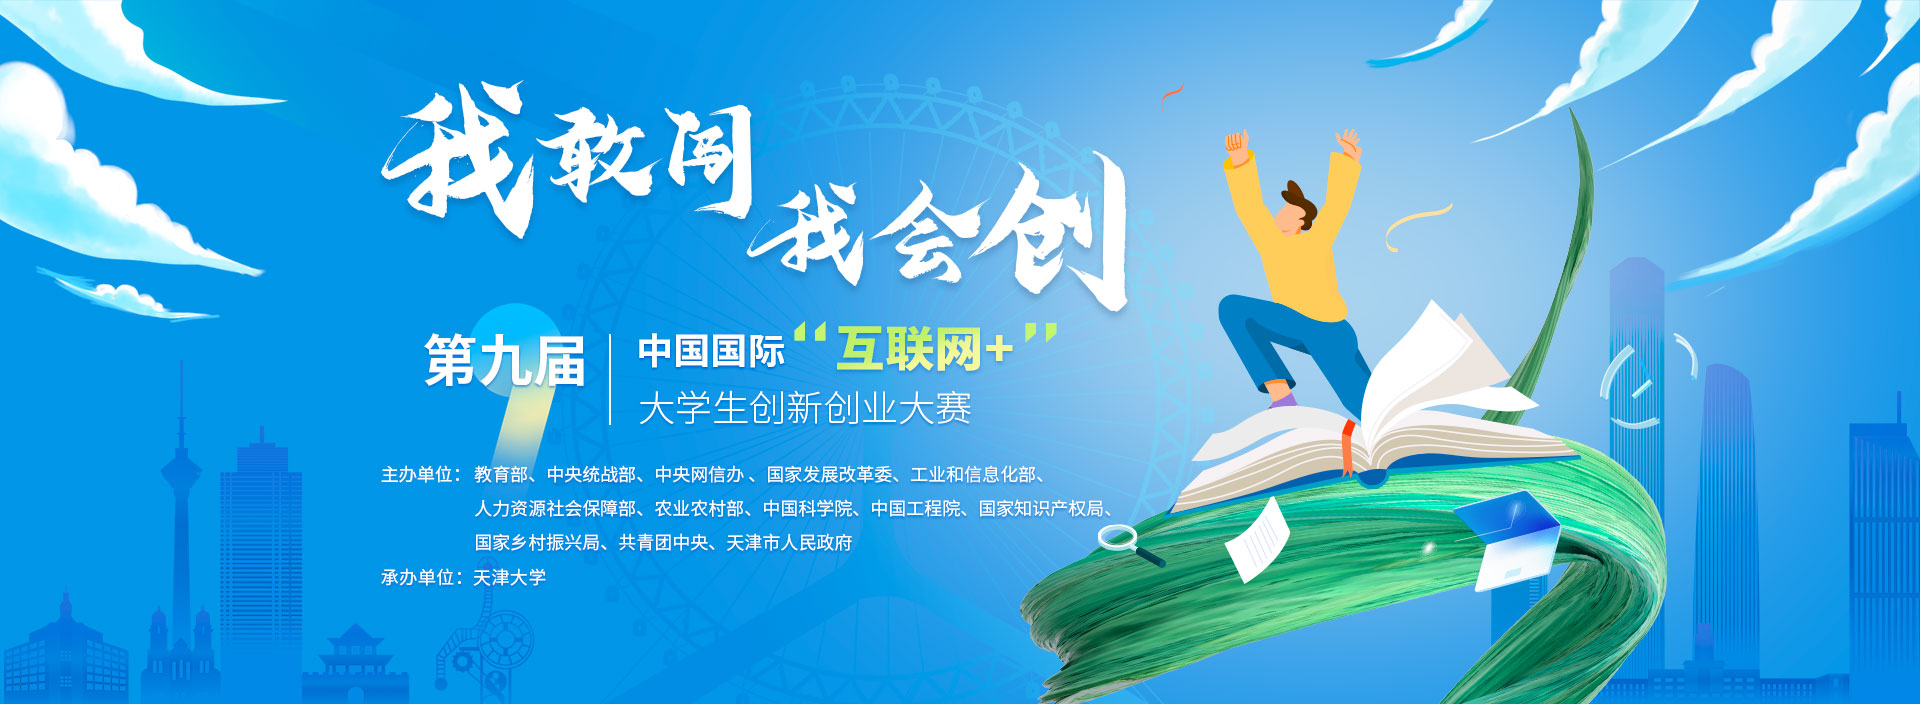 第九届中国国际“互联网+”大学生创新创业大赛